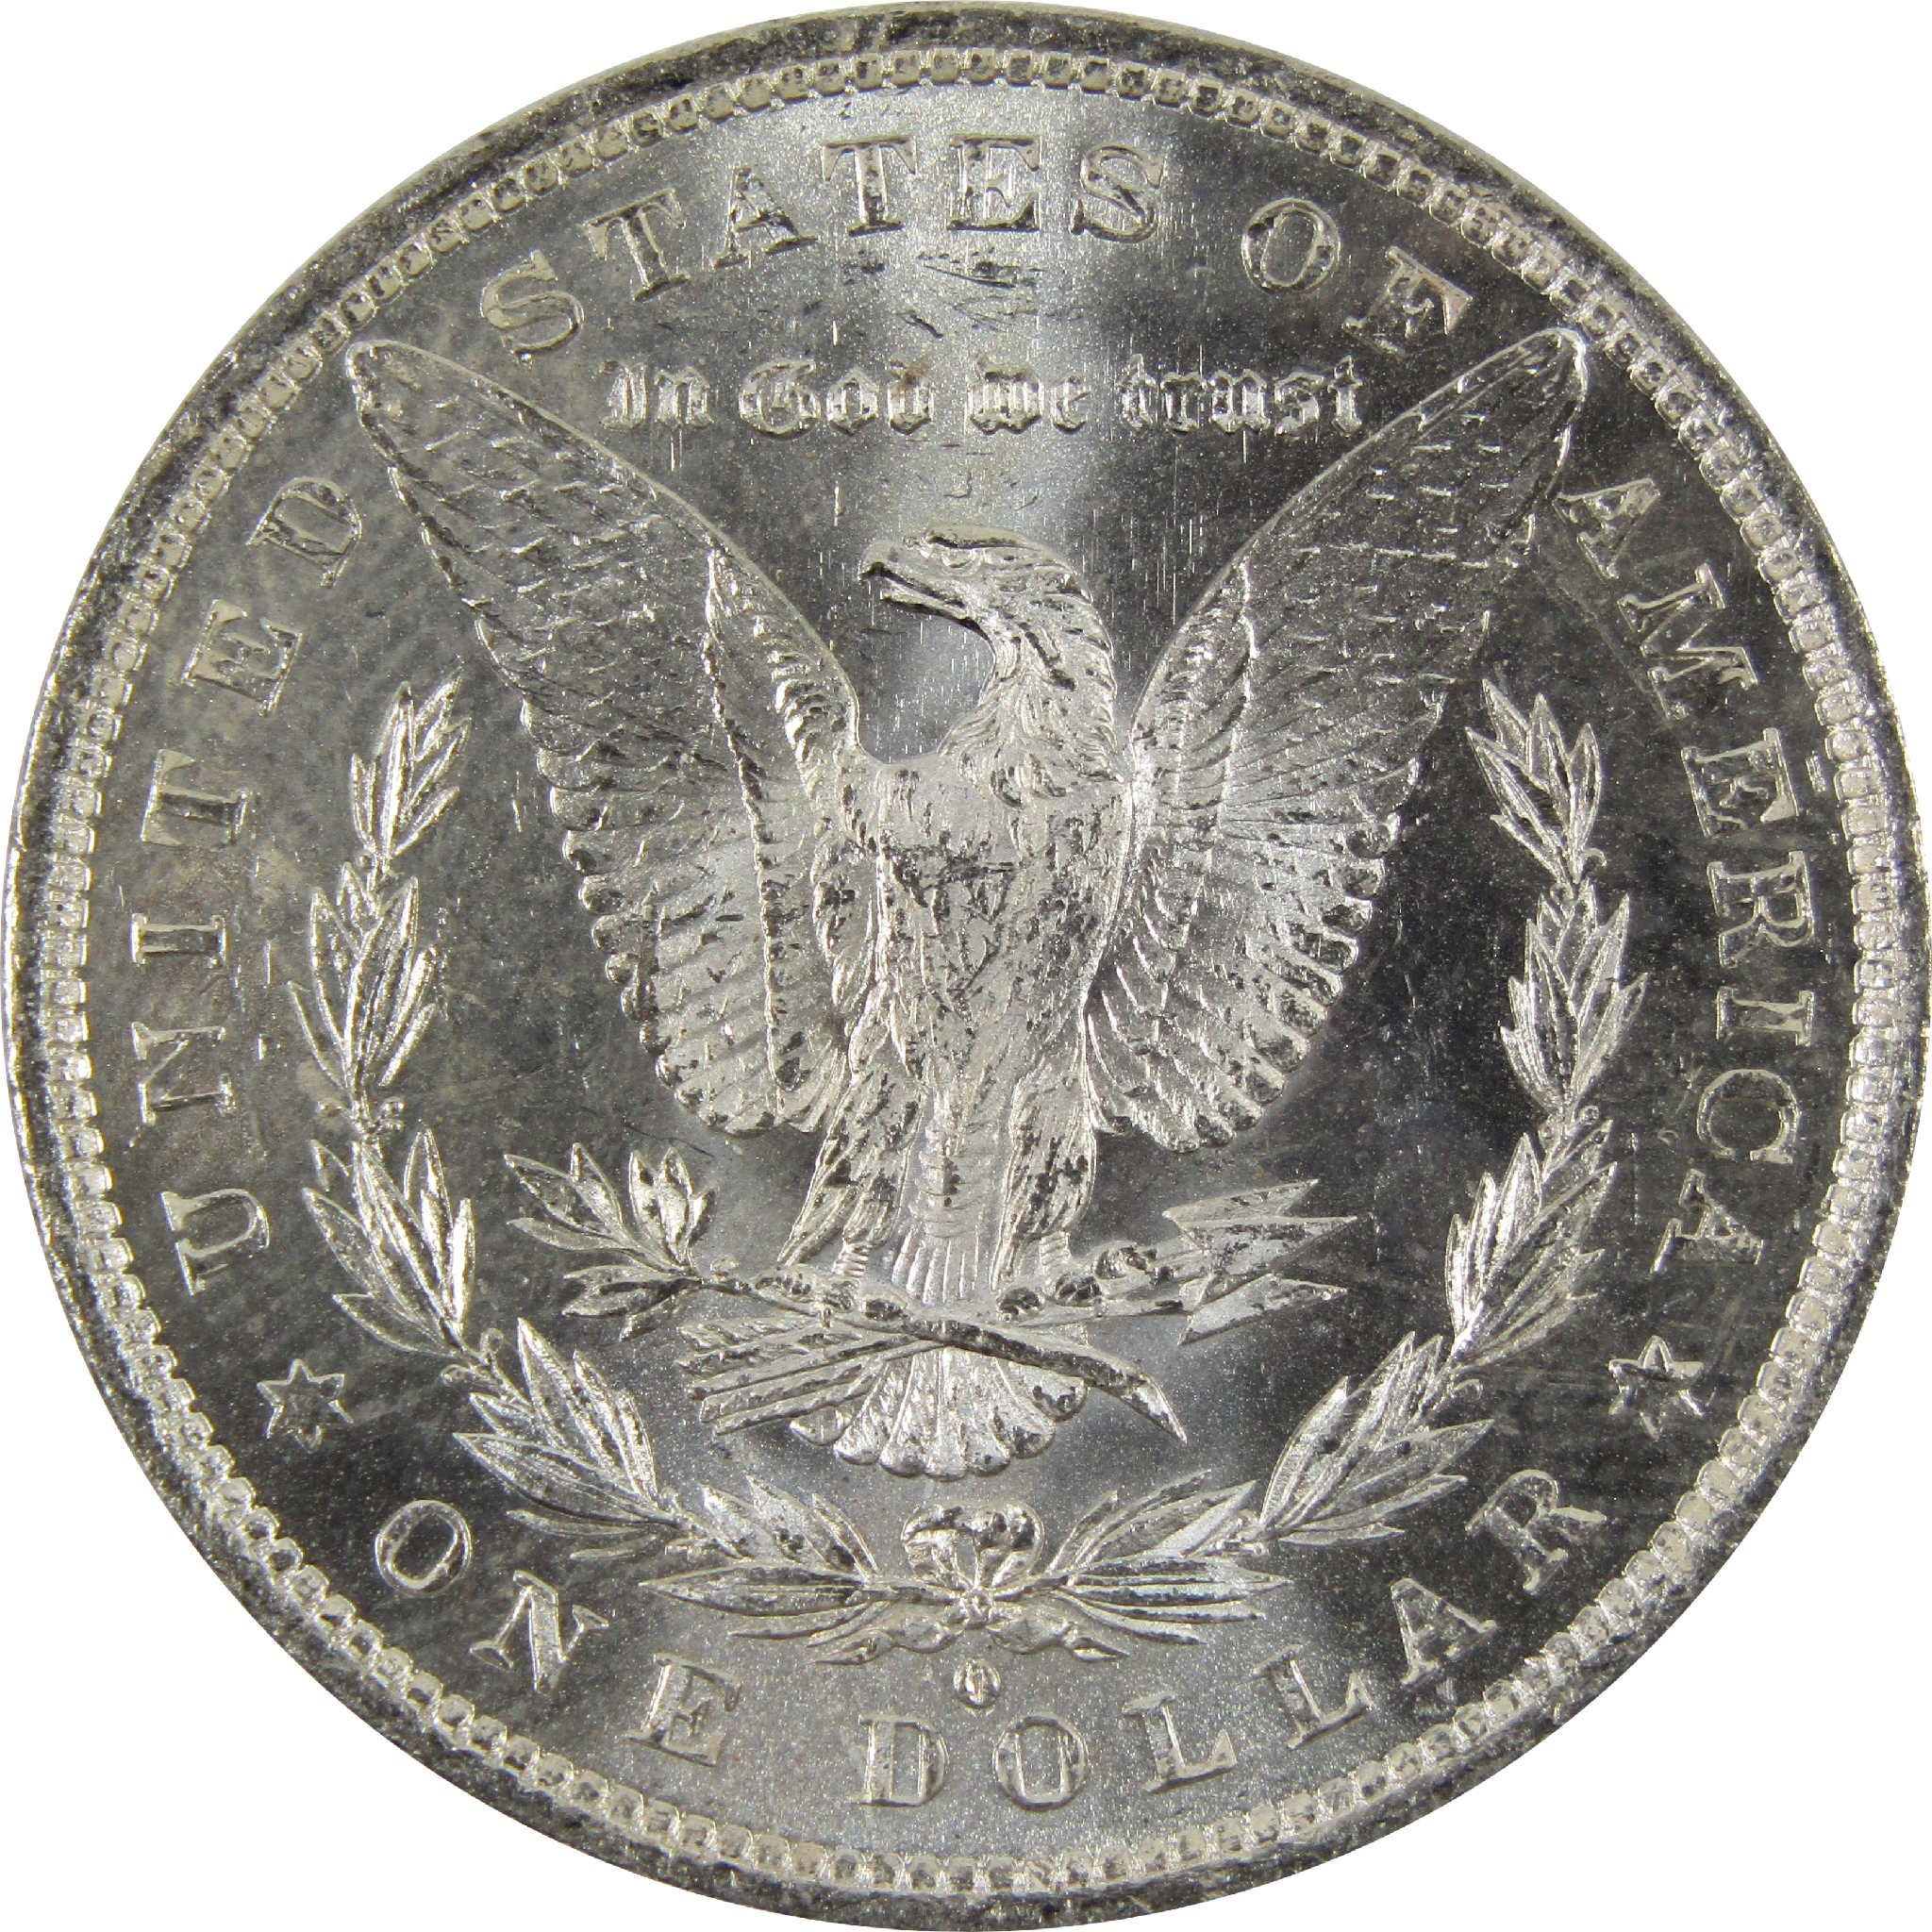 1882 O Morgan Dollar BU Uncirculated 90% Silver $1 Coin SKU:I8910 - Morgan coin - Morgan silver dollar - Morgan silver dollar for sale - Profile Coins &amp; Collectibles